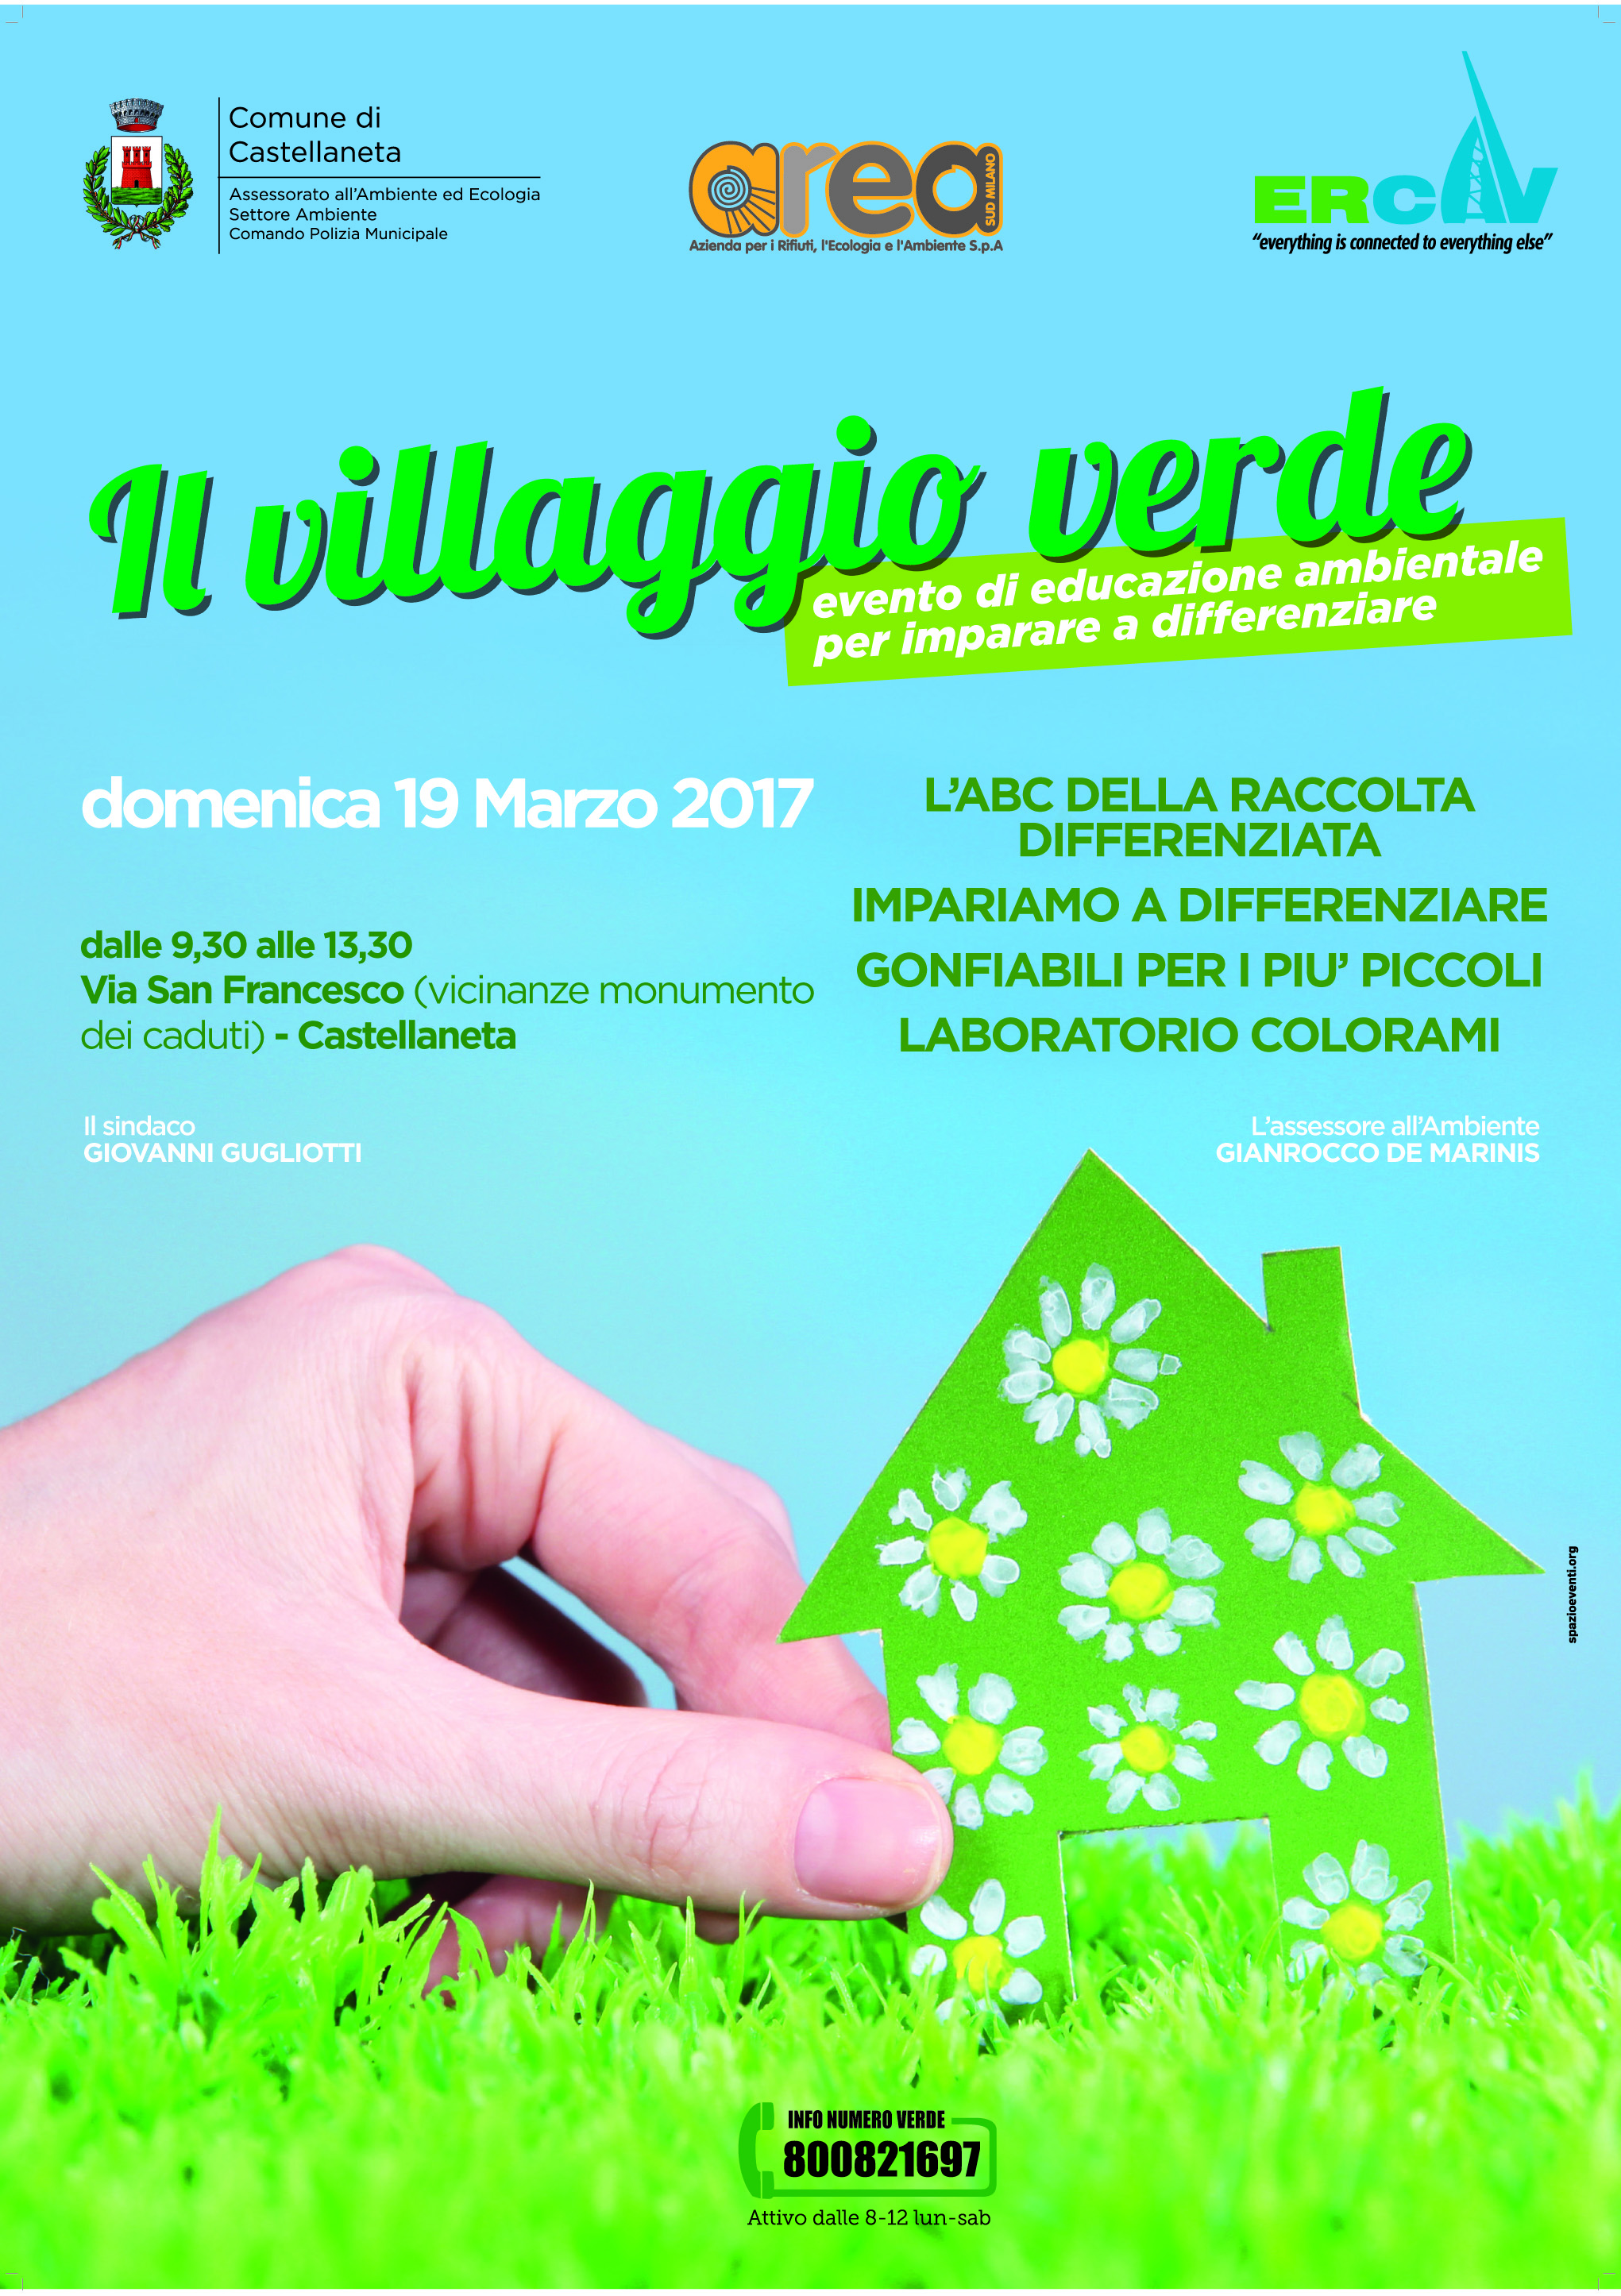 Il Villaggio Verde della differenziata domenica a Castellaneta